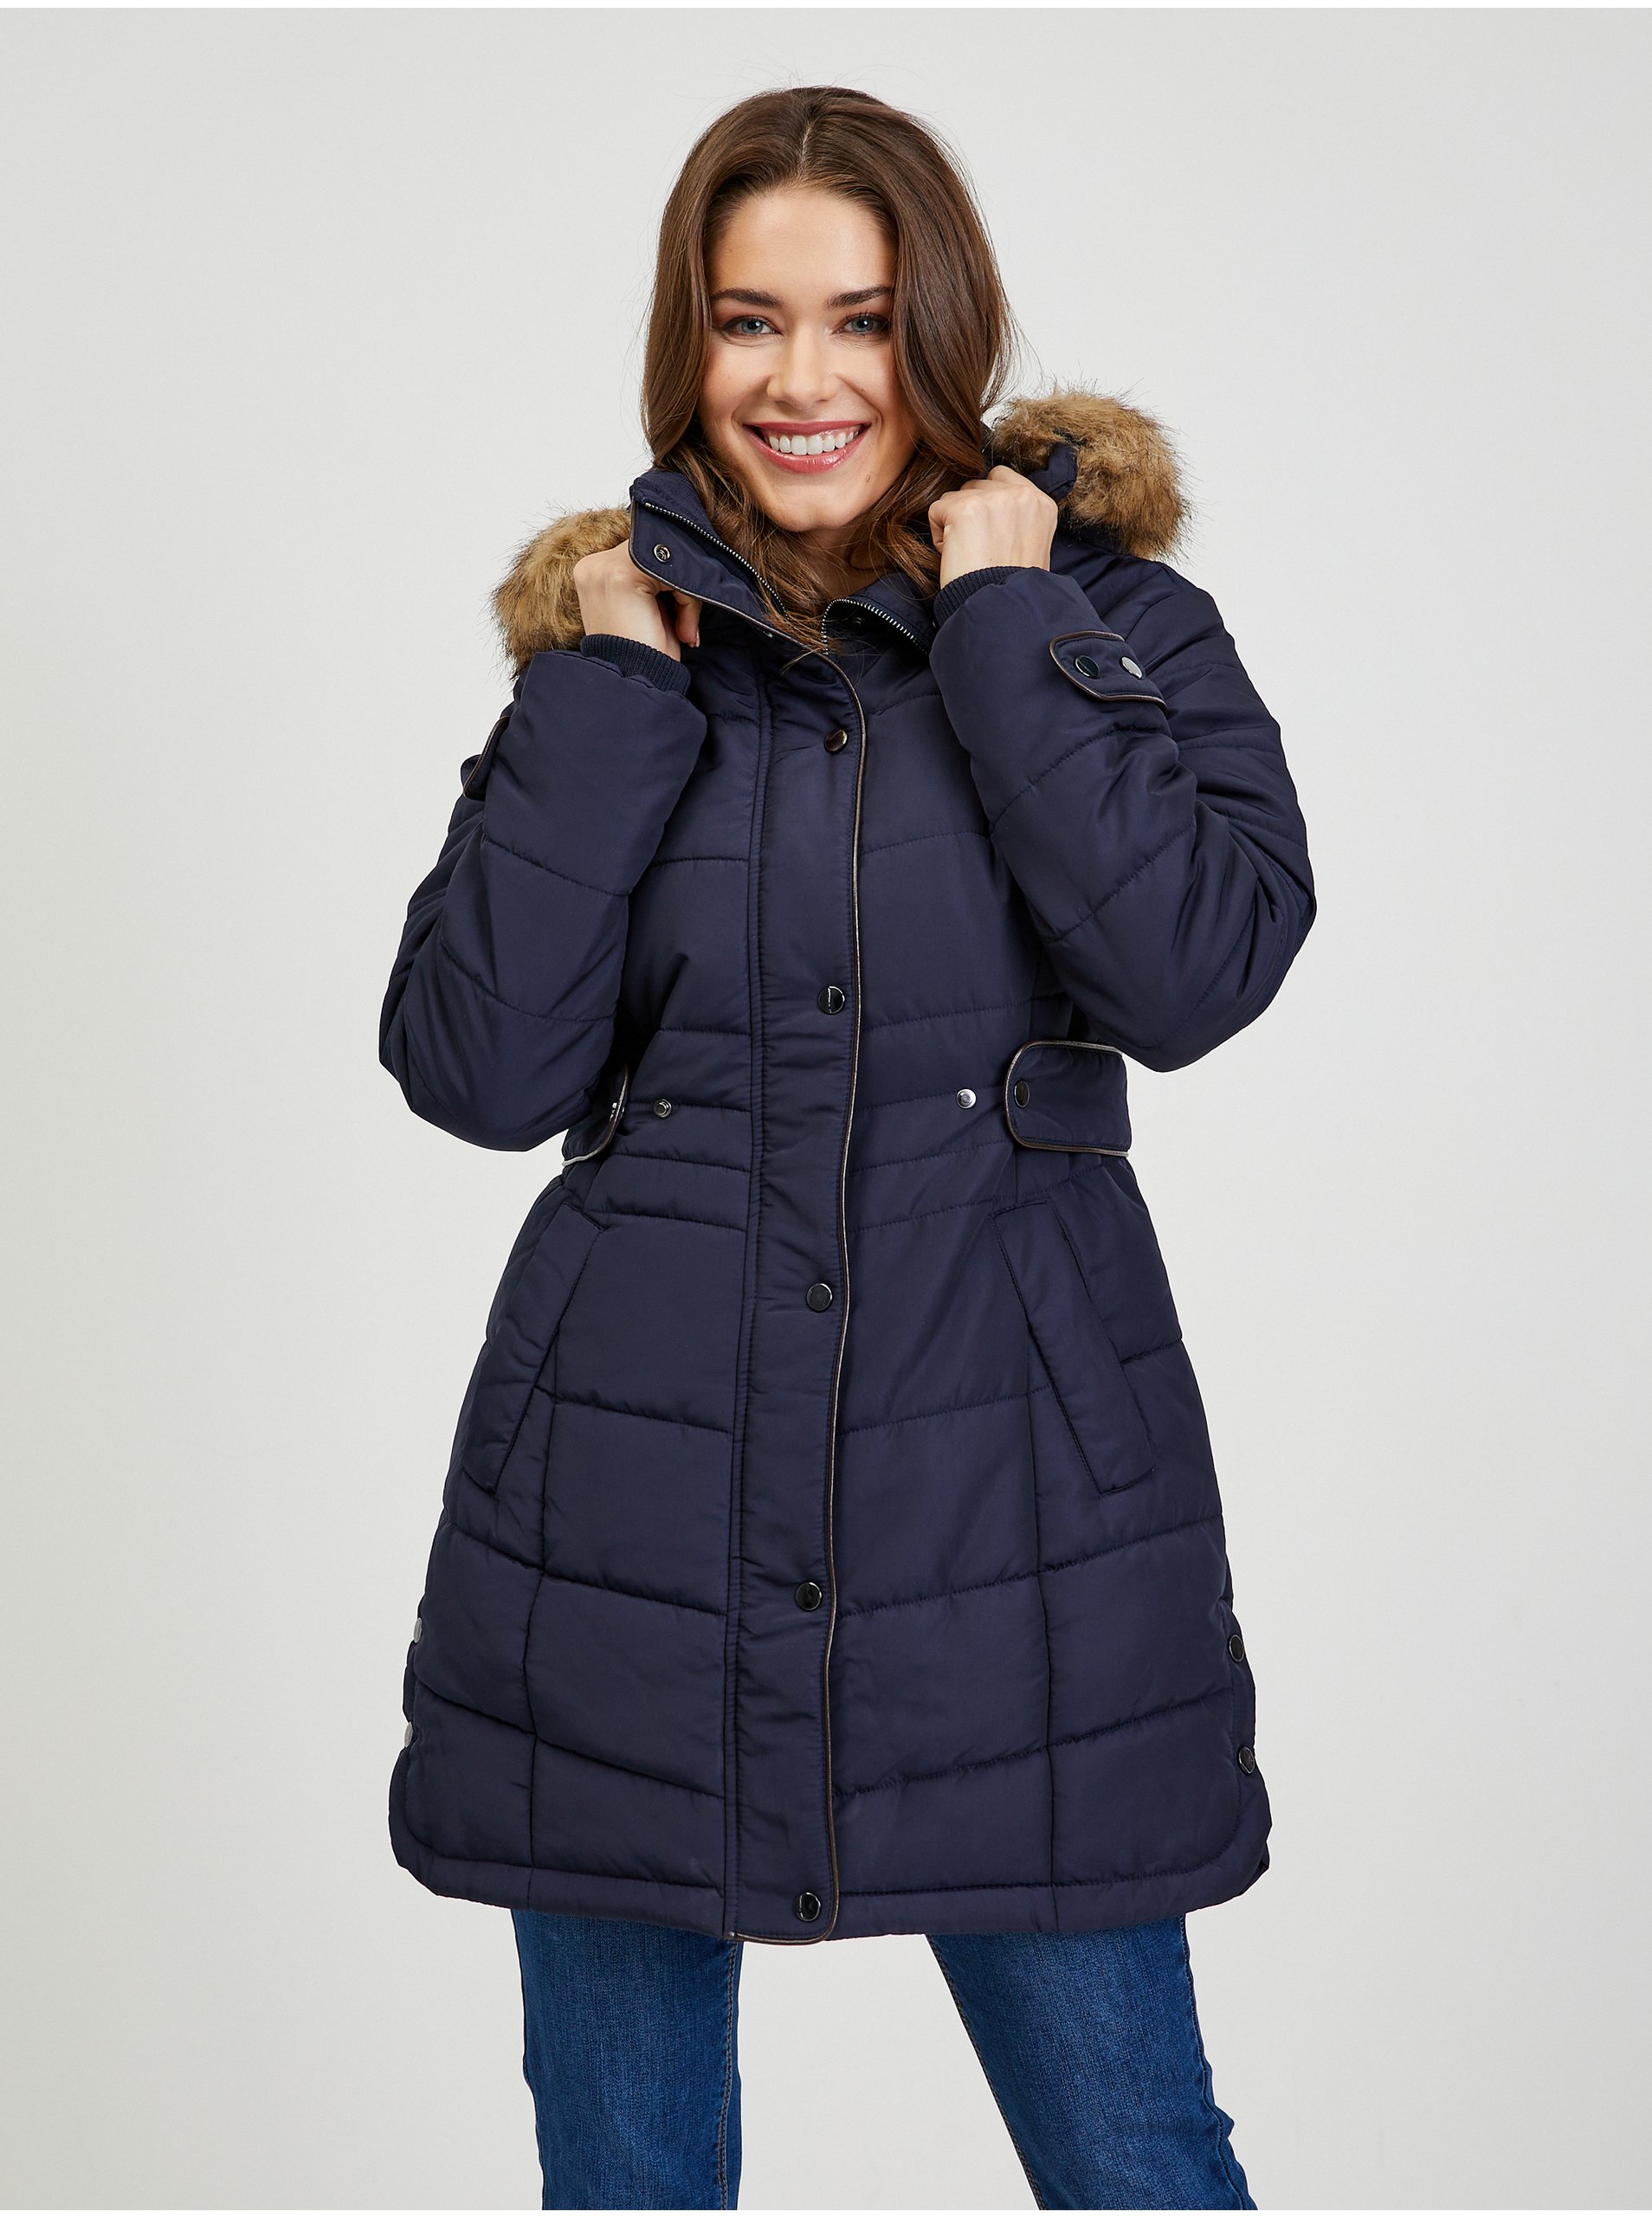 E-shop Tmavě modrý dámský prošívaný zimní kabát s odepínací kapucí s kožíškem ORSAY